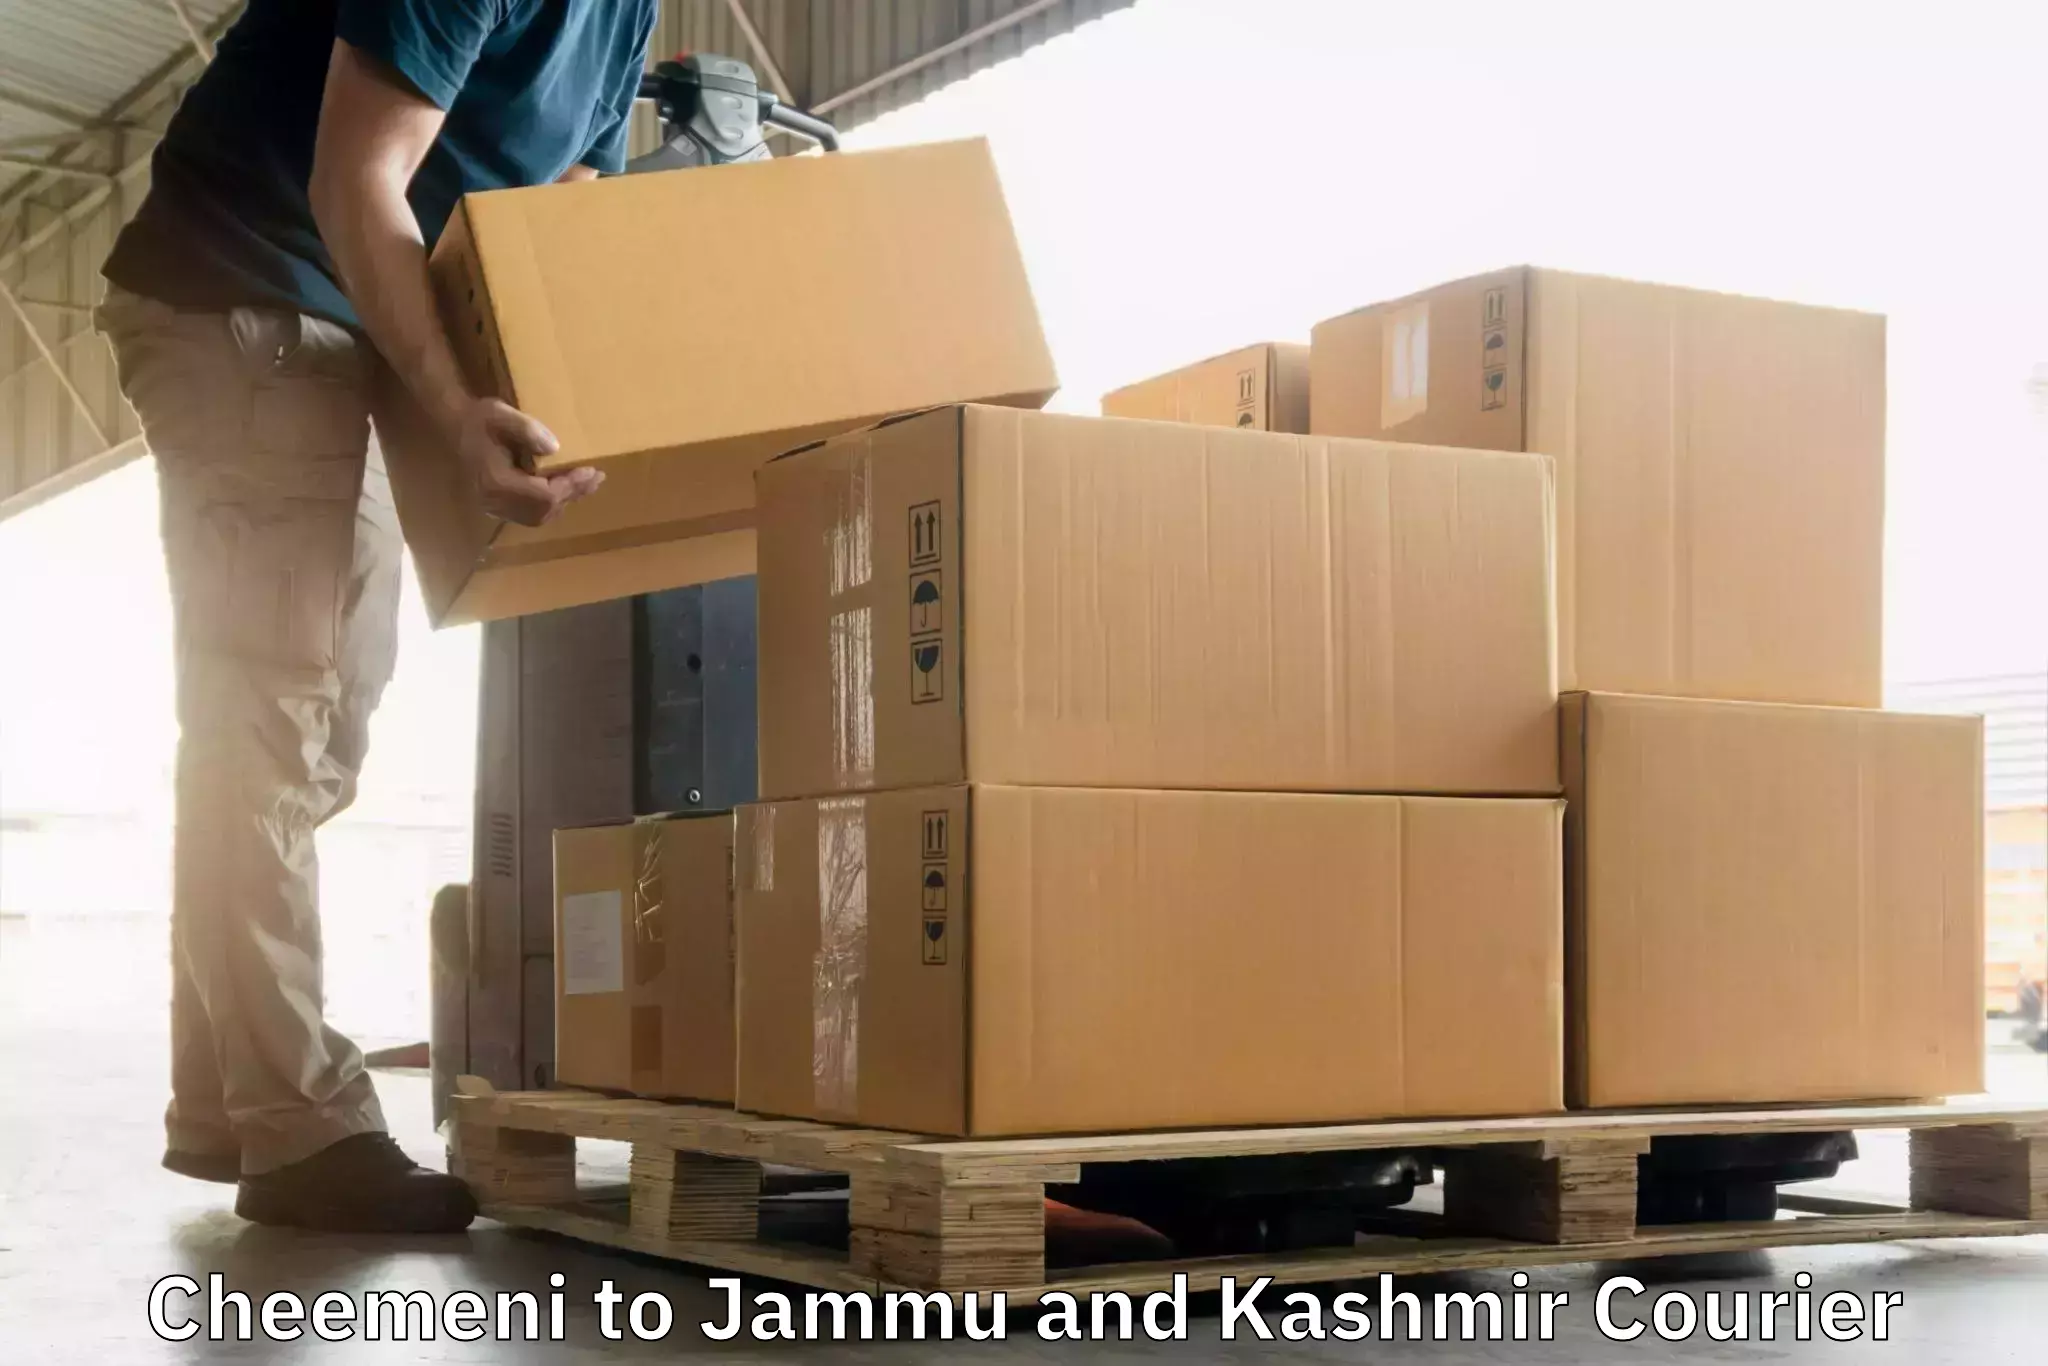 Express logistics service Cheemeni to Jakh